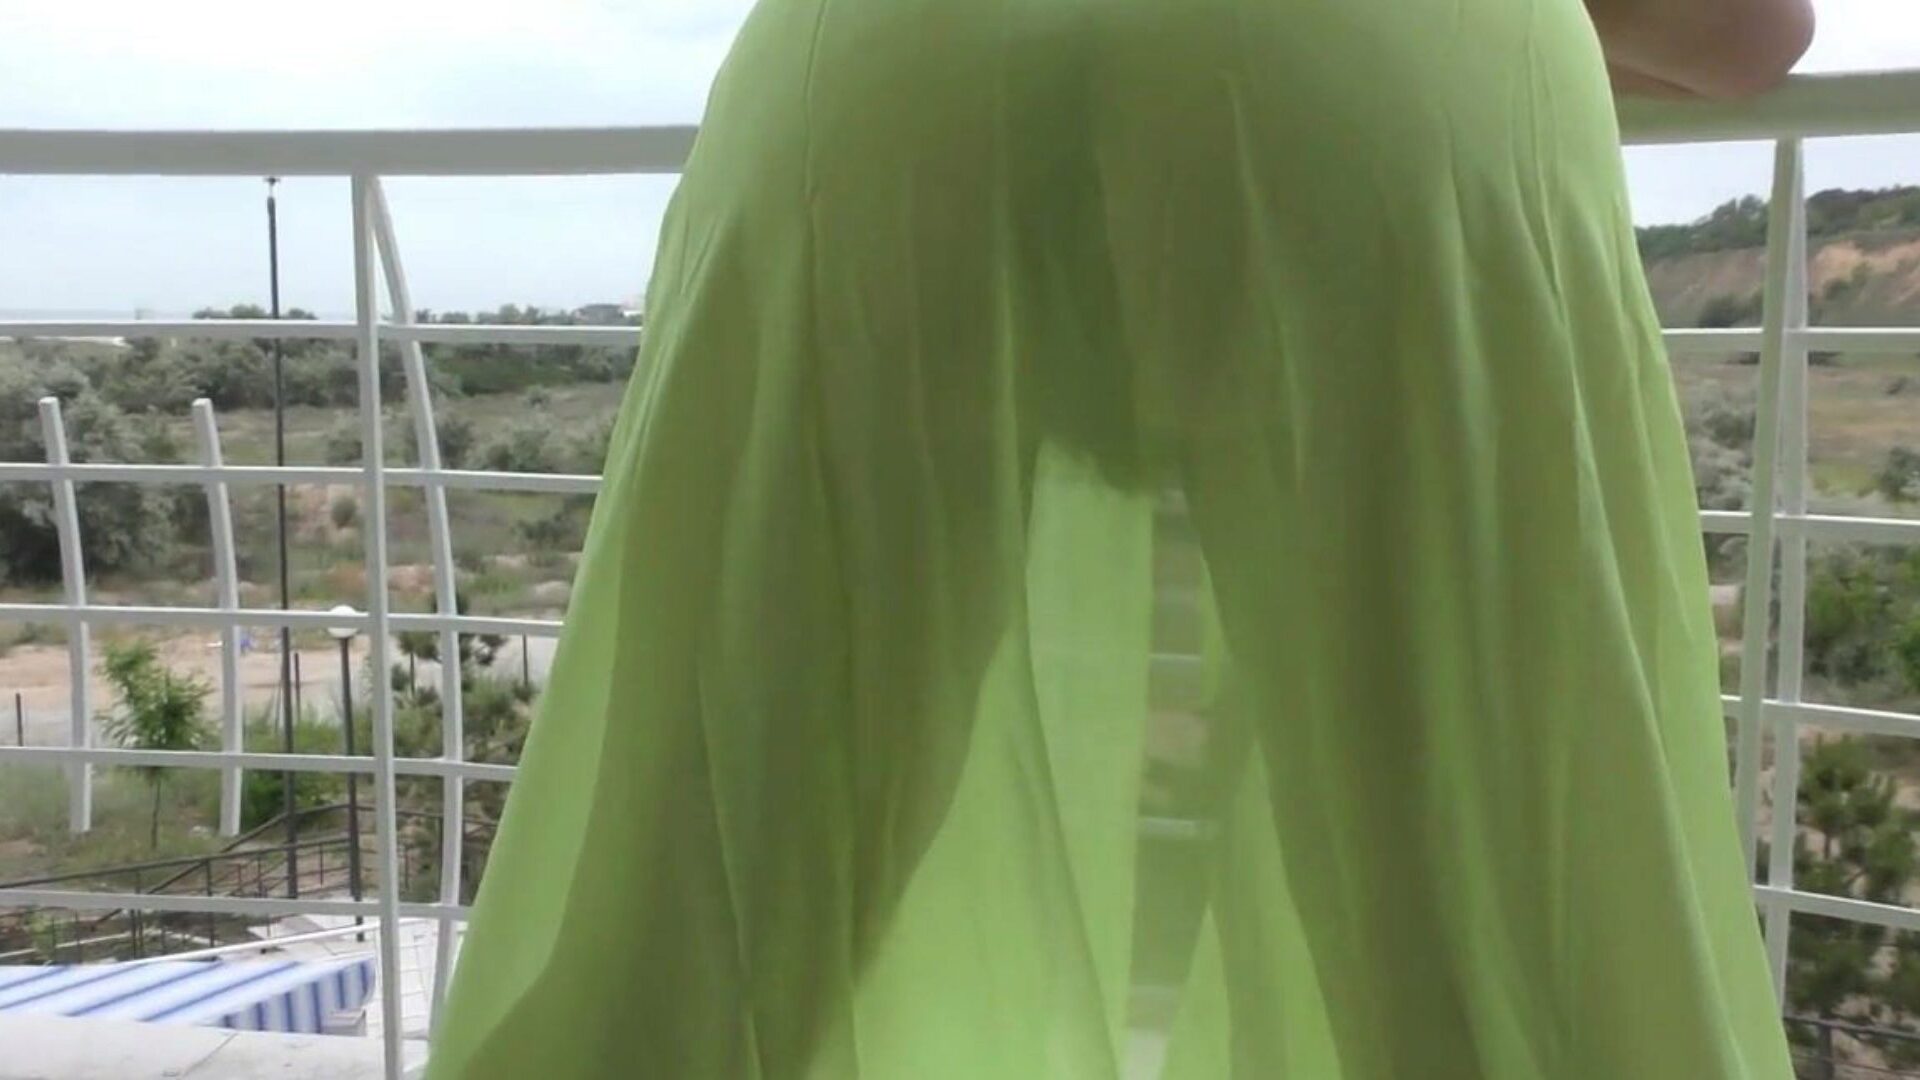 τριχωτές ηλικίες που εμφανίζονται στο μπαλκόνι τριχωτές μεγαλύτερες σε ημιδιαφανές κοστούμι στο μπαλκόνι